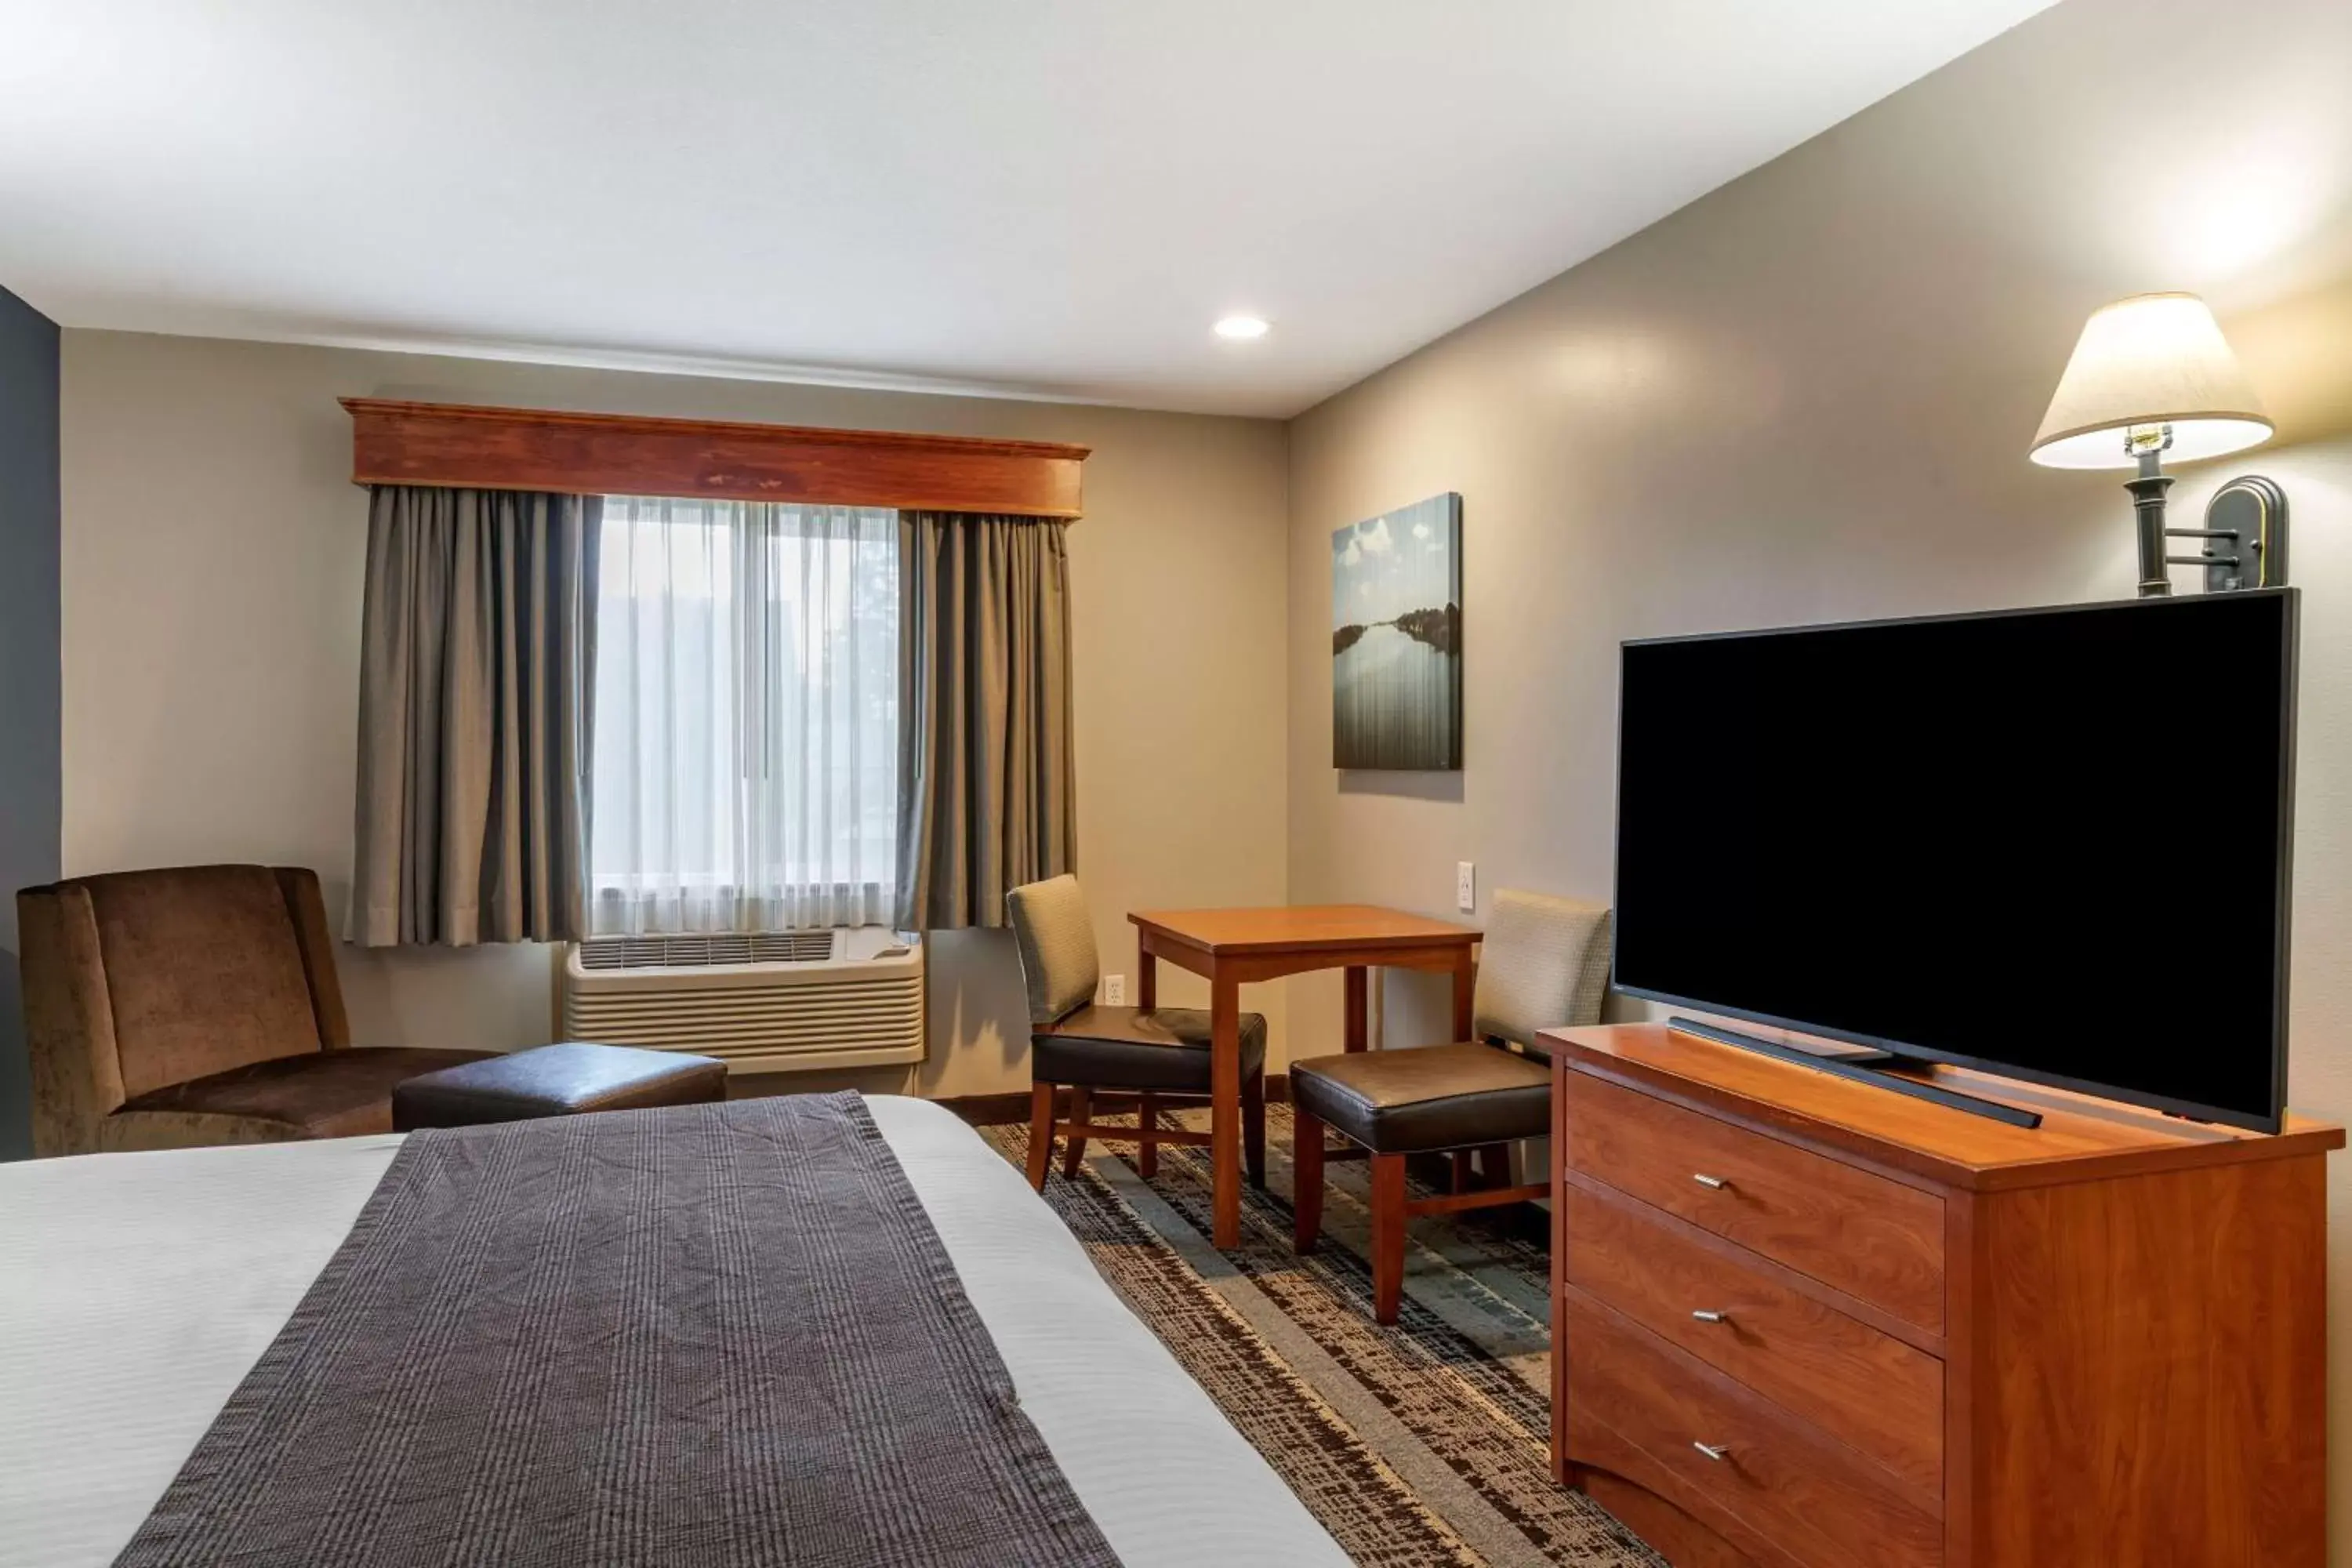 Bedroom, TV/Entertainment Center in Best Western Newberg Inn